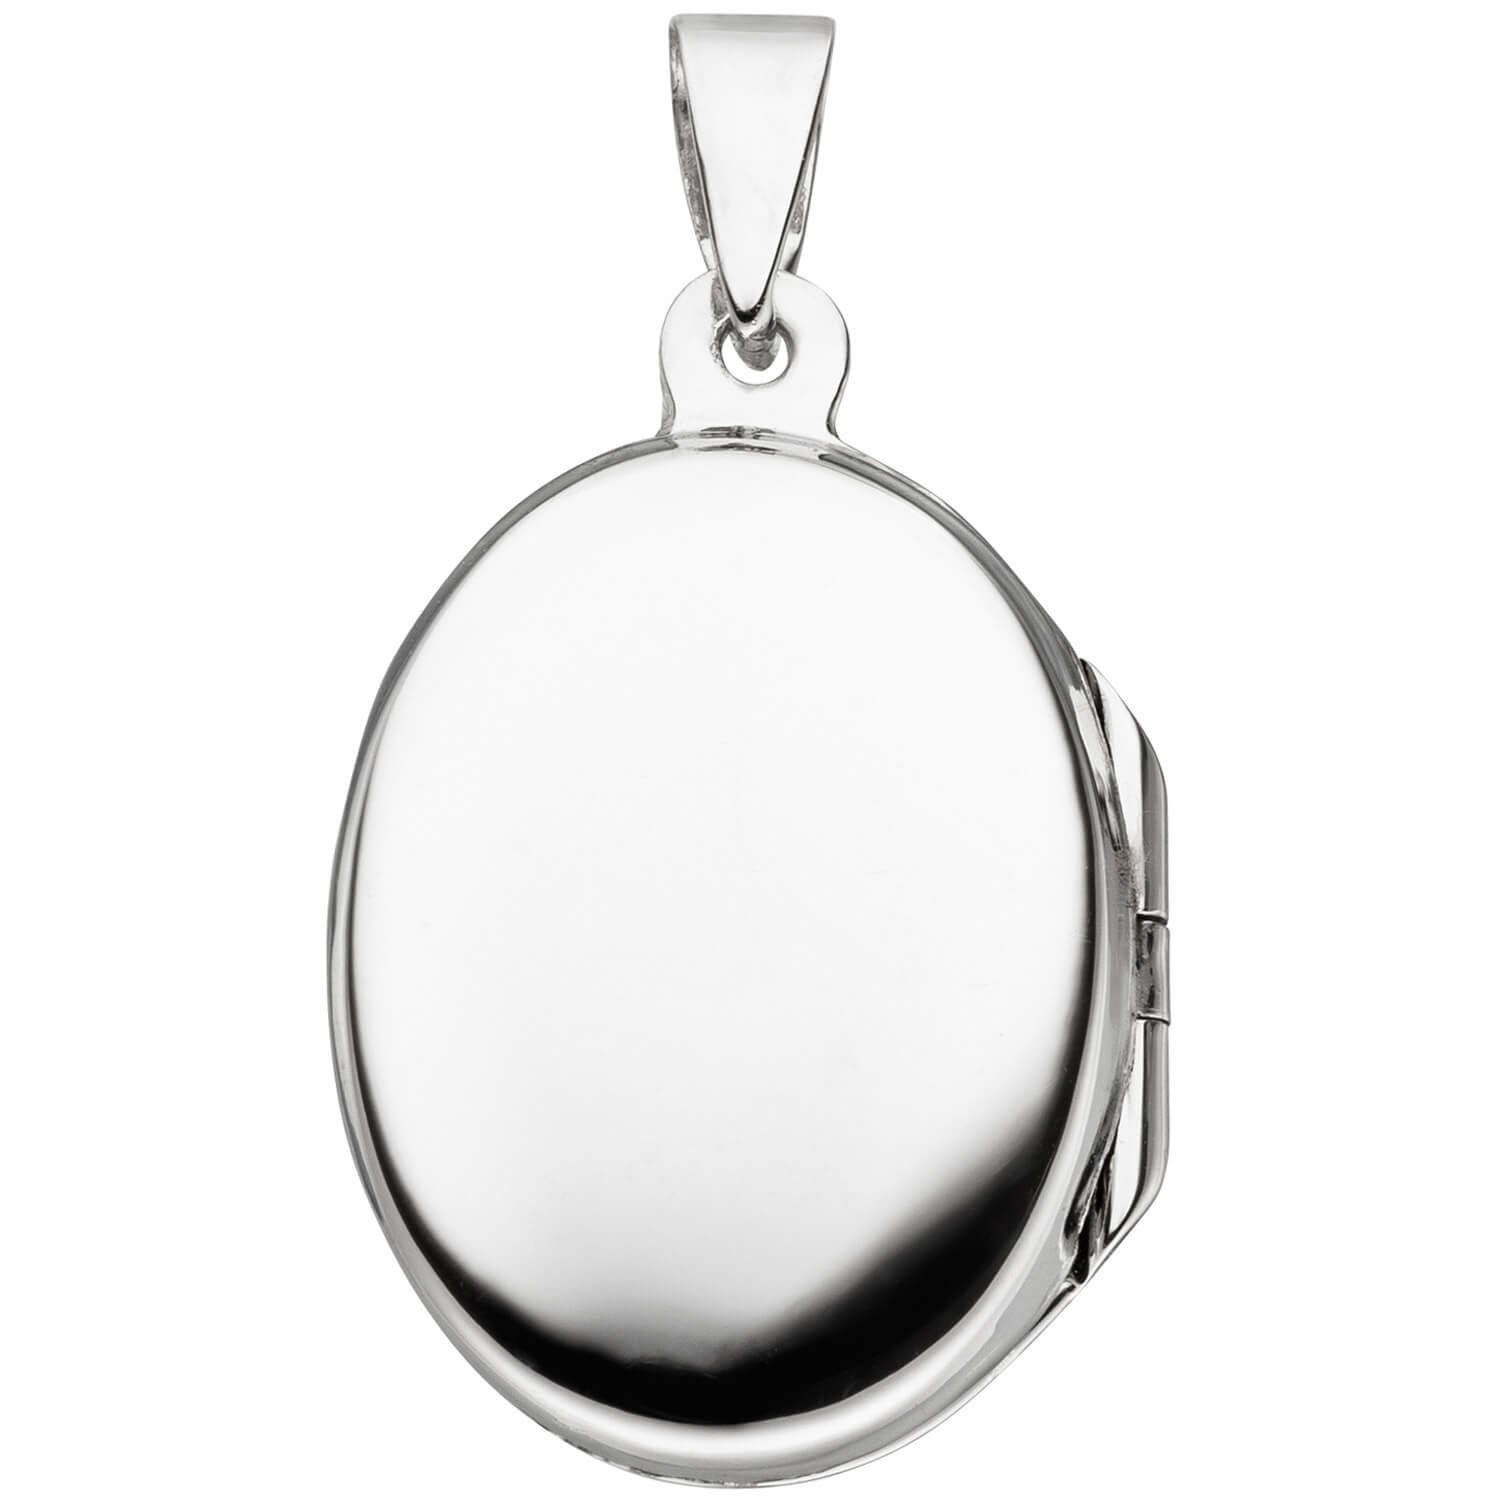 Krone oval mit Schmetterling Medaillon Öffnen Silberkette Schmuck Fotos zum Halskette 925 2 Silber 42cm